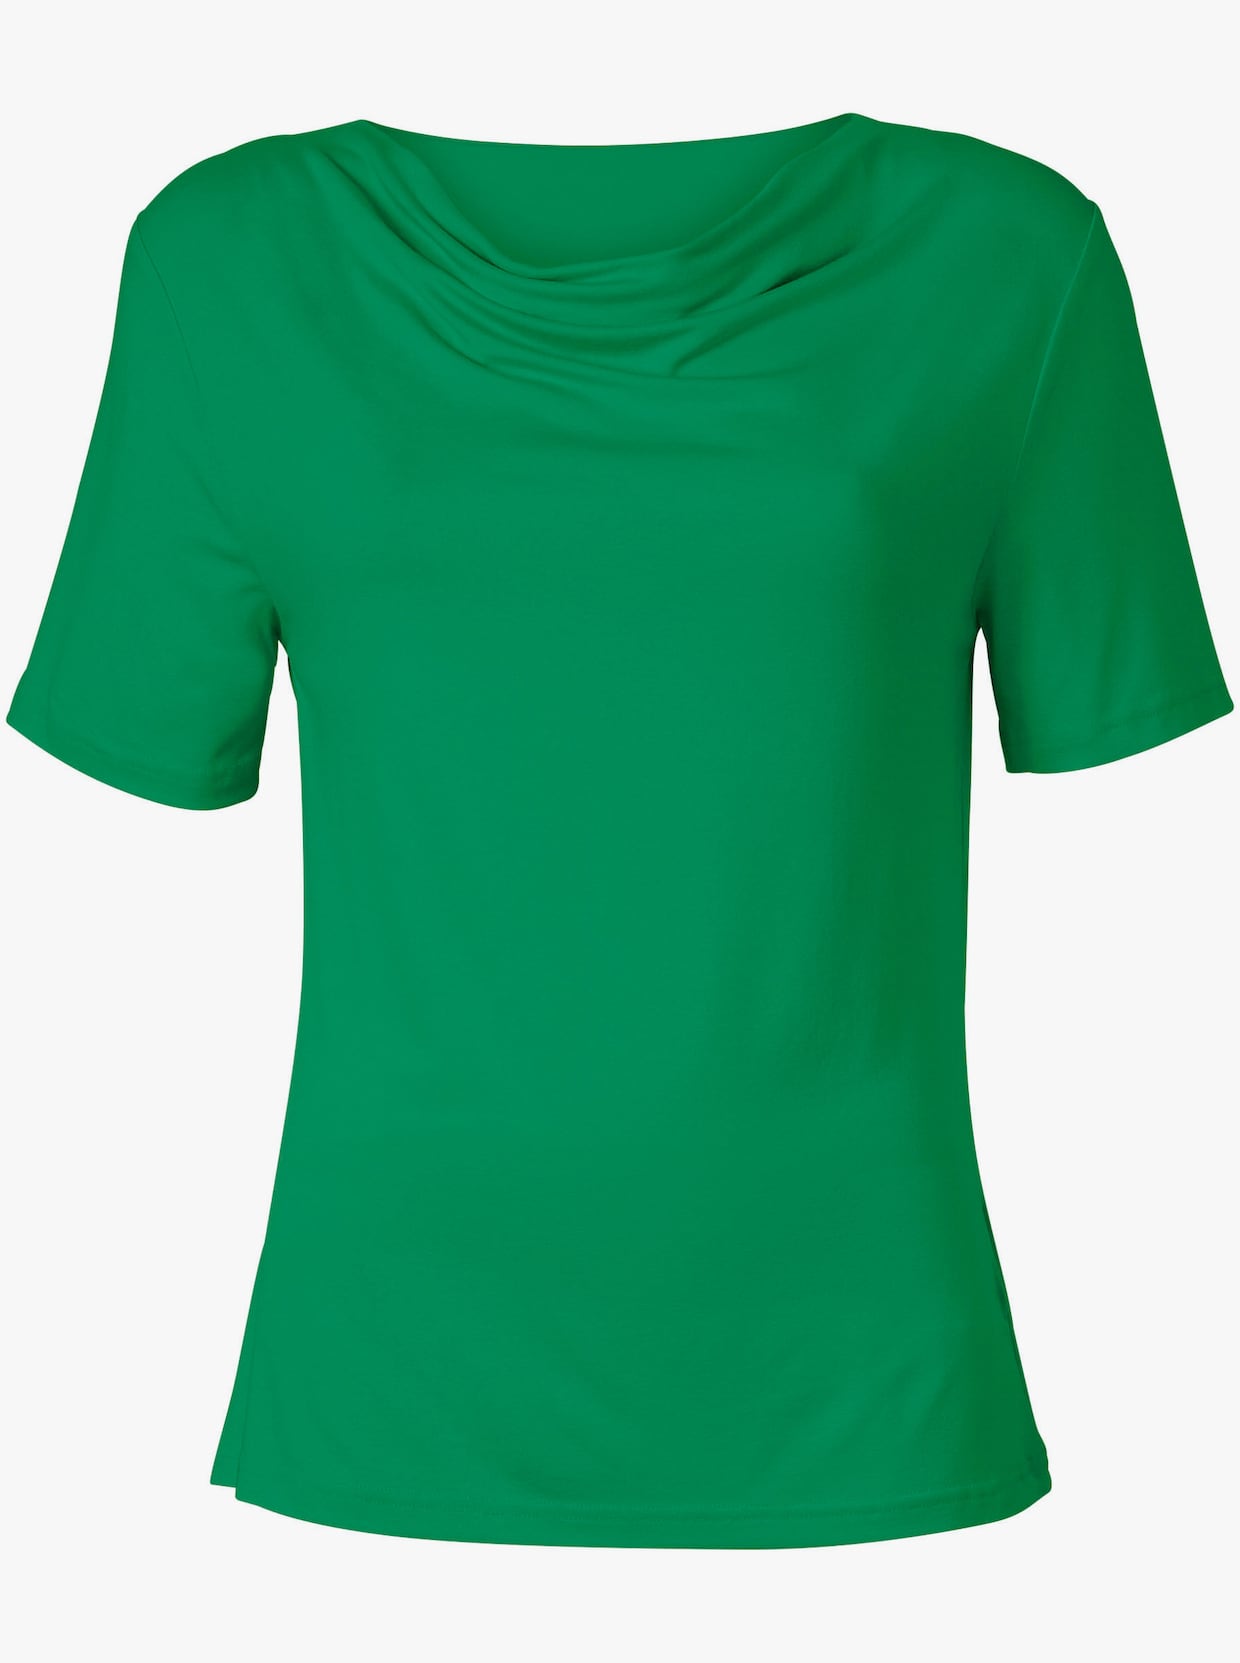 Tričko s vodopádovým golierom - zelená